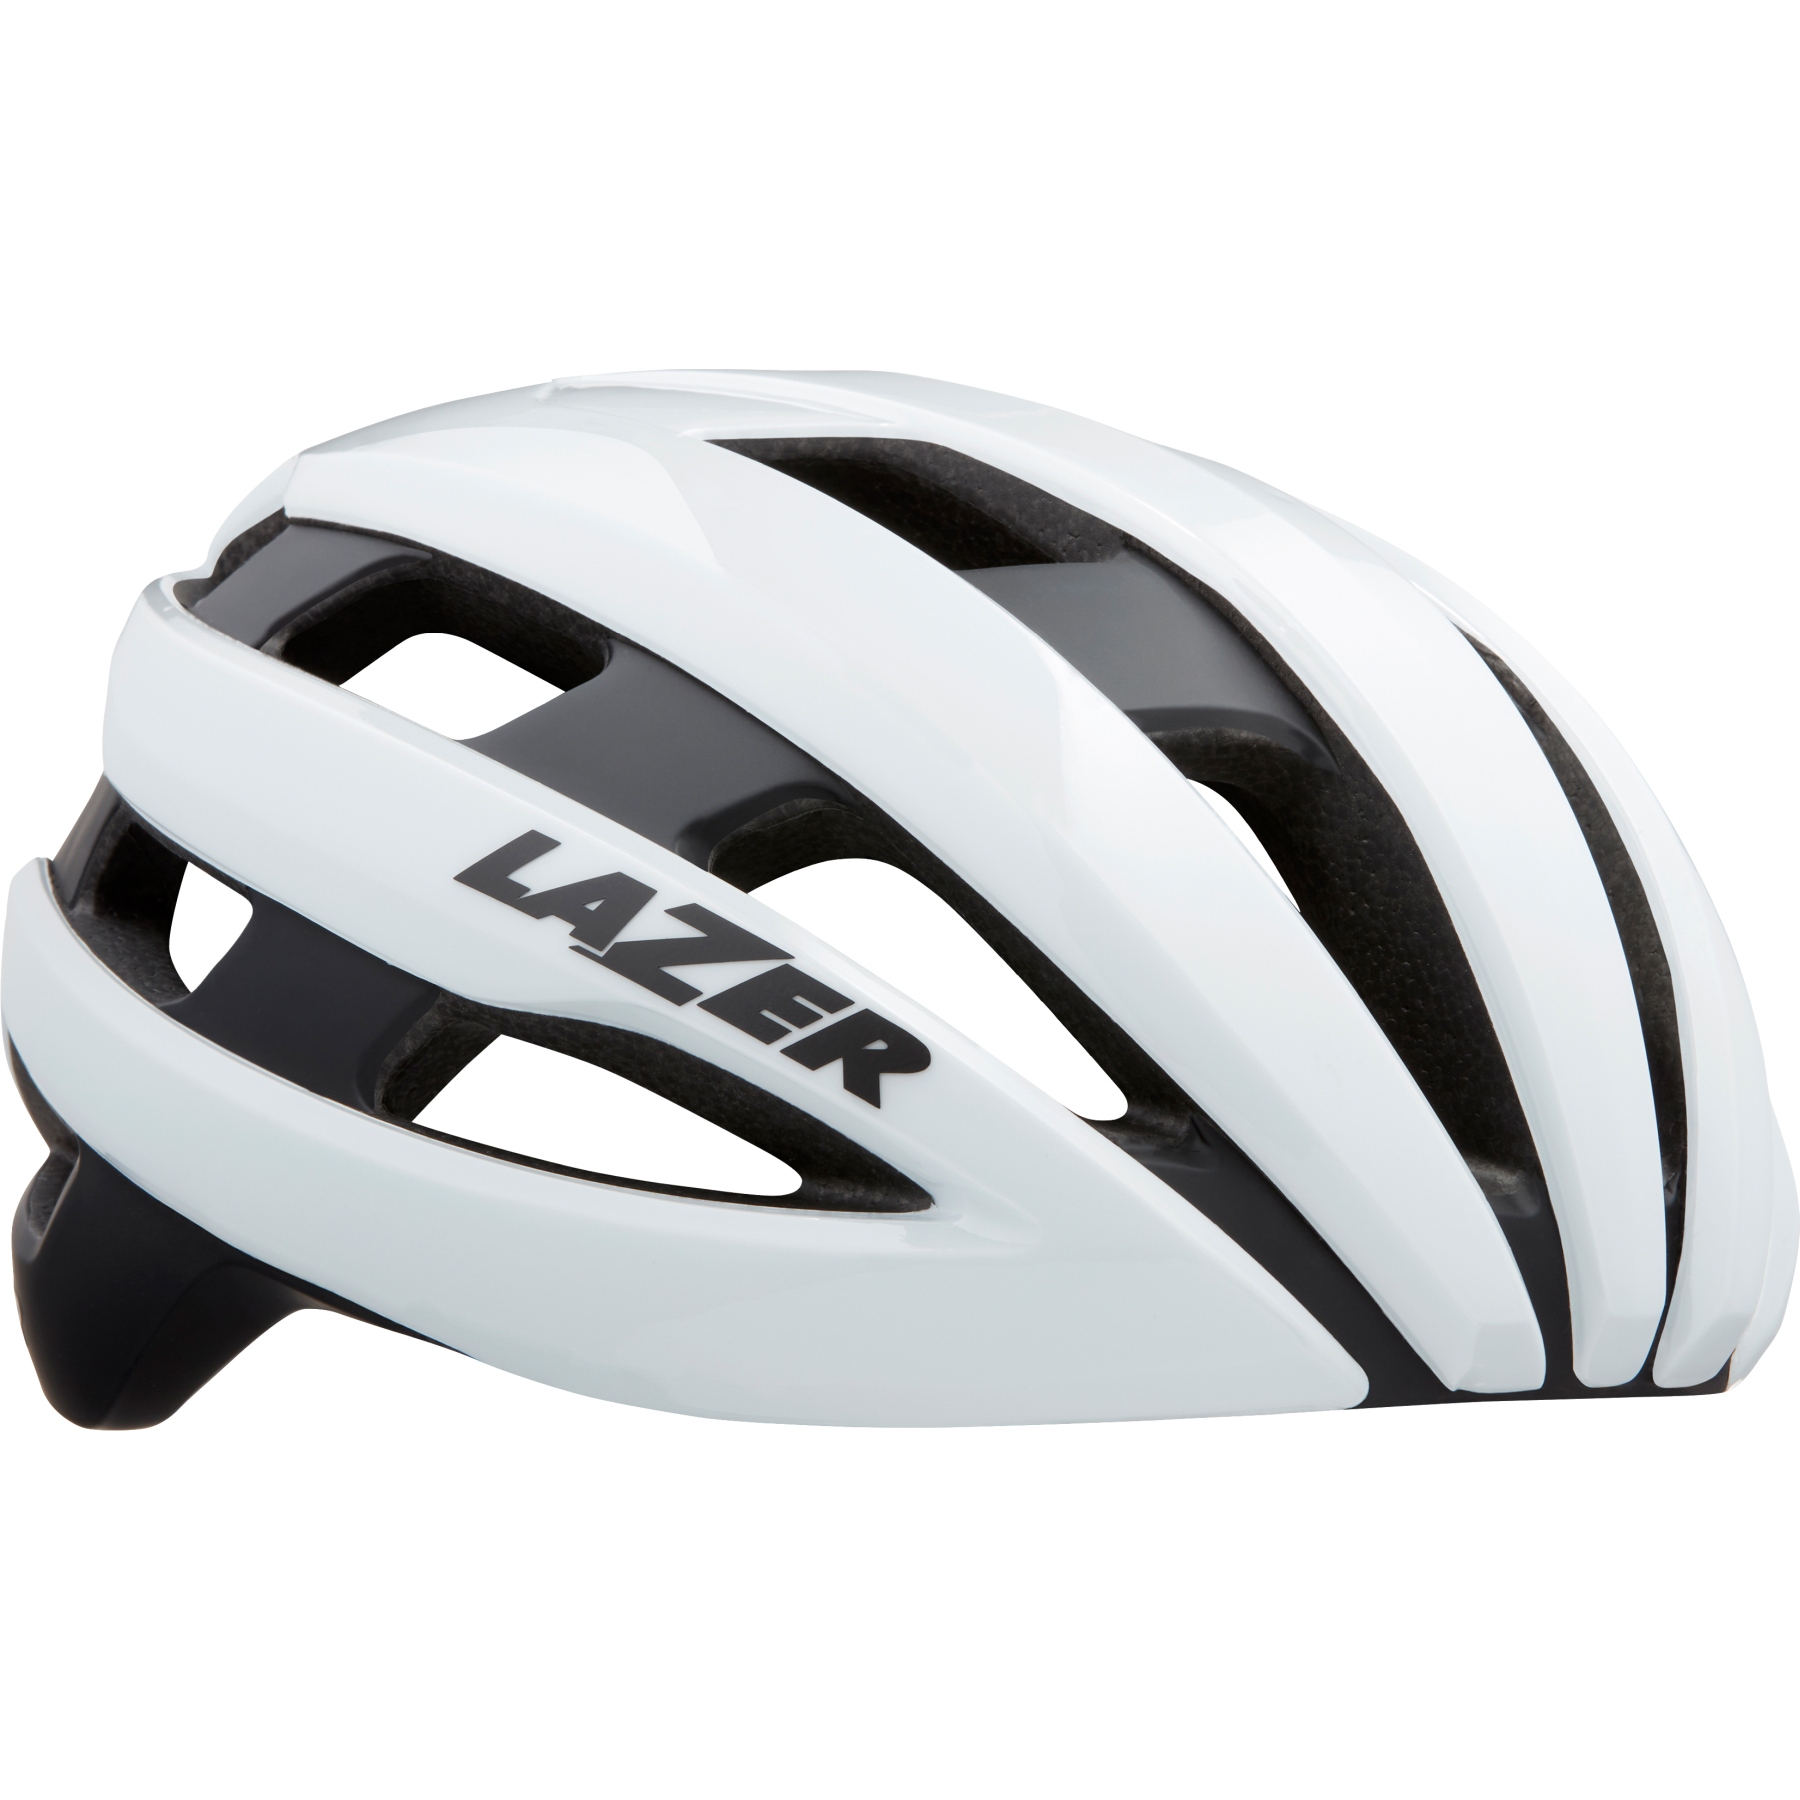 Picture of Lazer Sphere Bike Helmet - white black